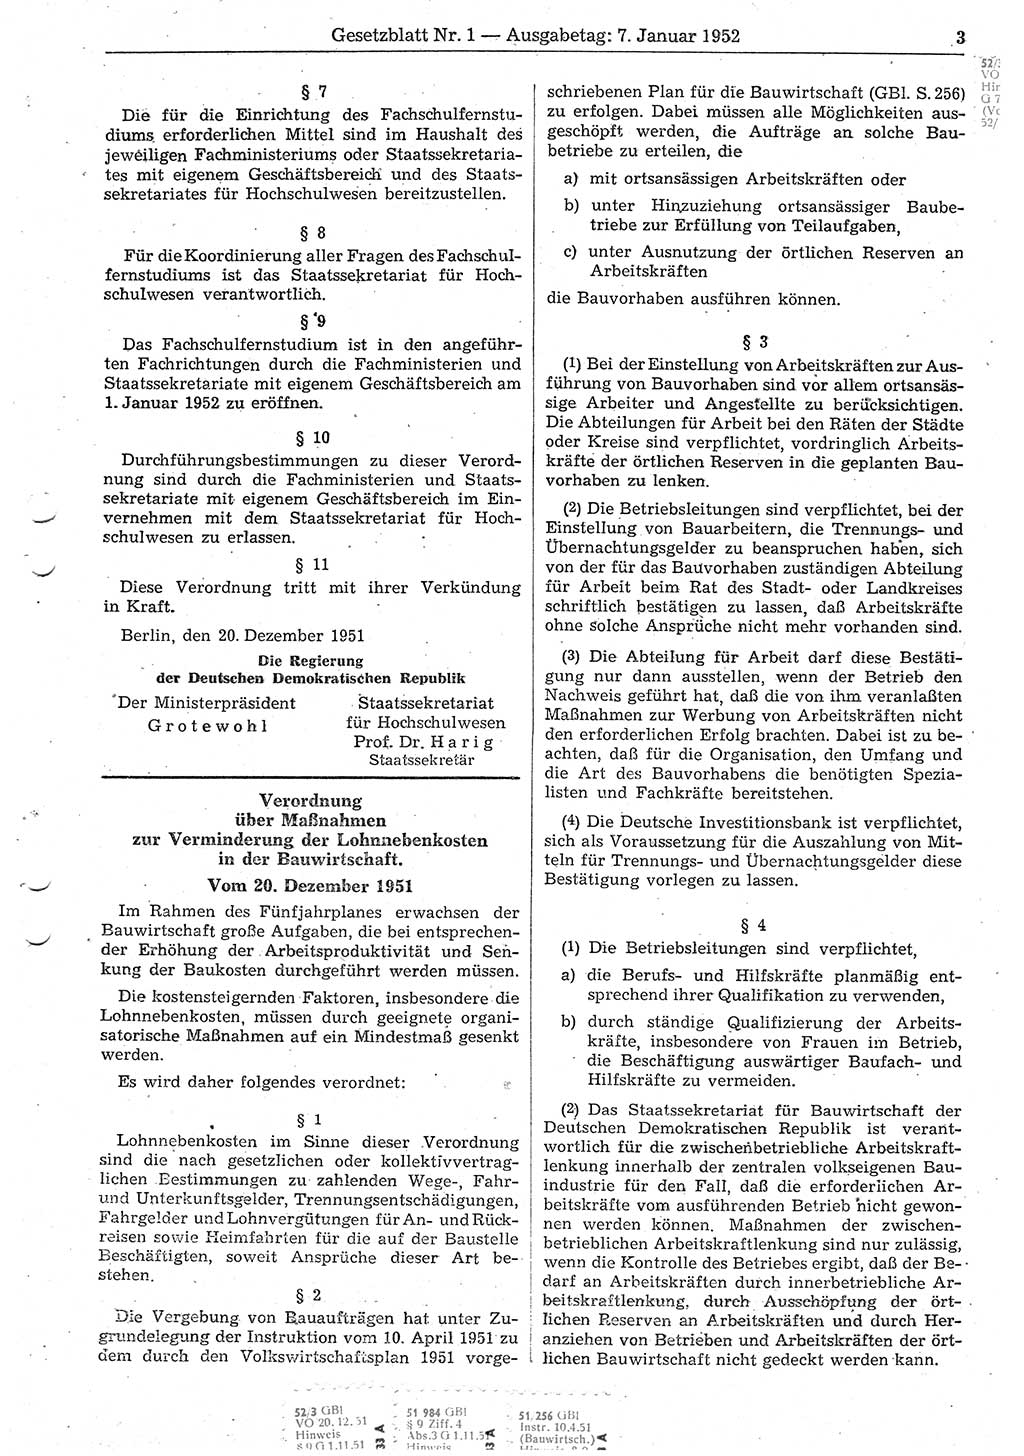 Gesetzblatt (GBl.) der Deutschen Demokratischen Republik (DDR) 1952, Seite 3 (GBl. DDR 1952, S. 3)